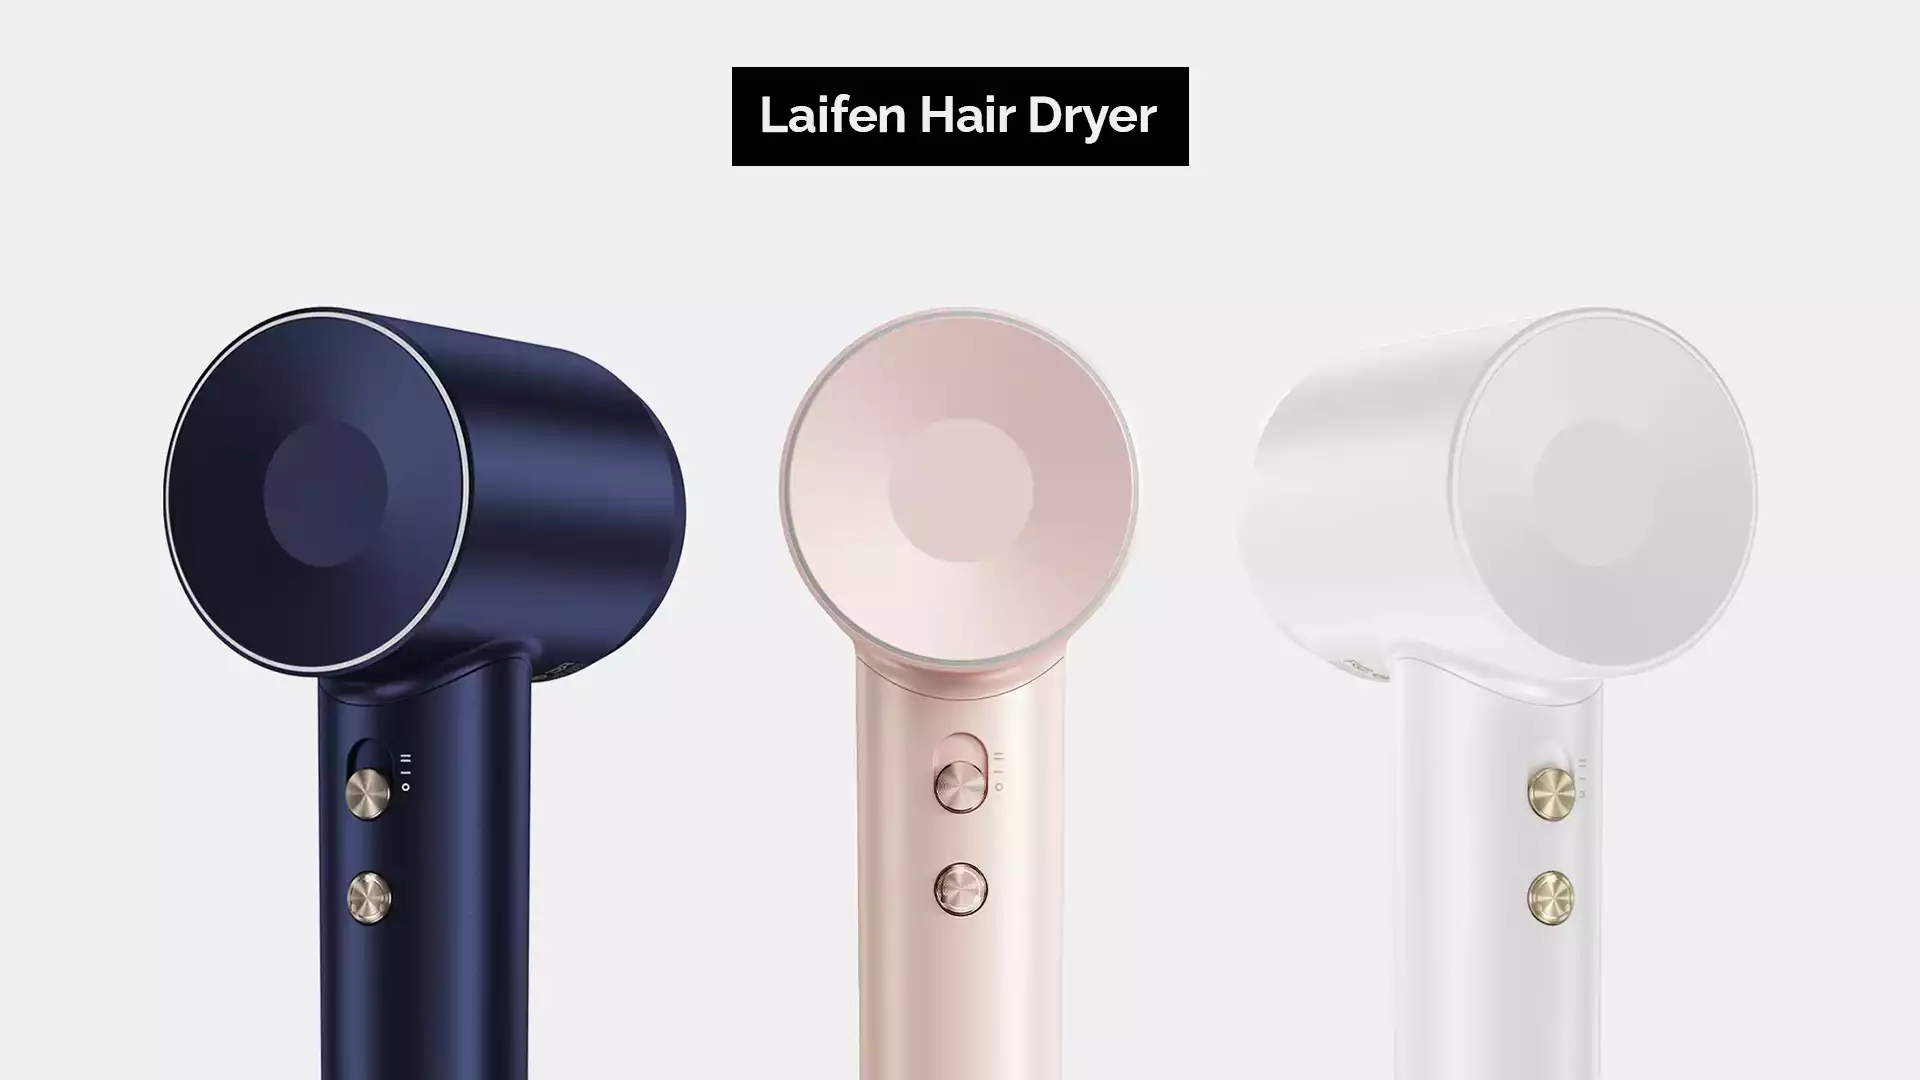 Laifen Hair Dryer